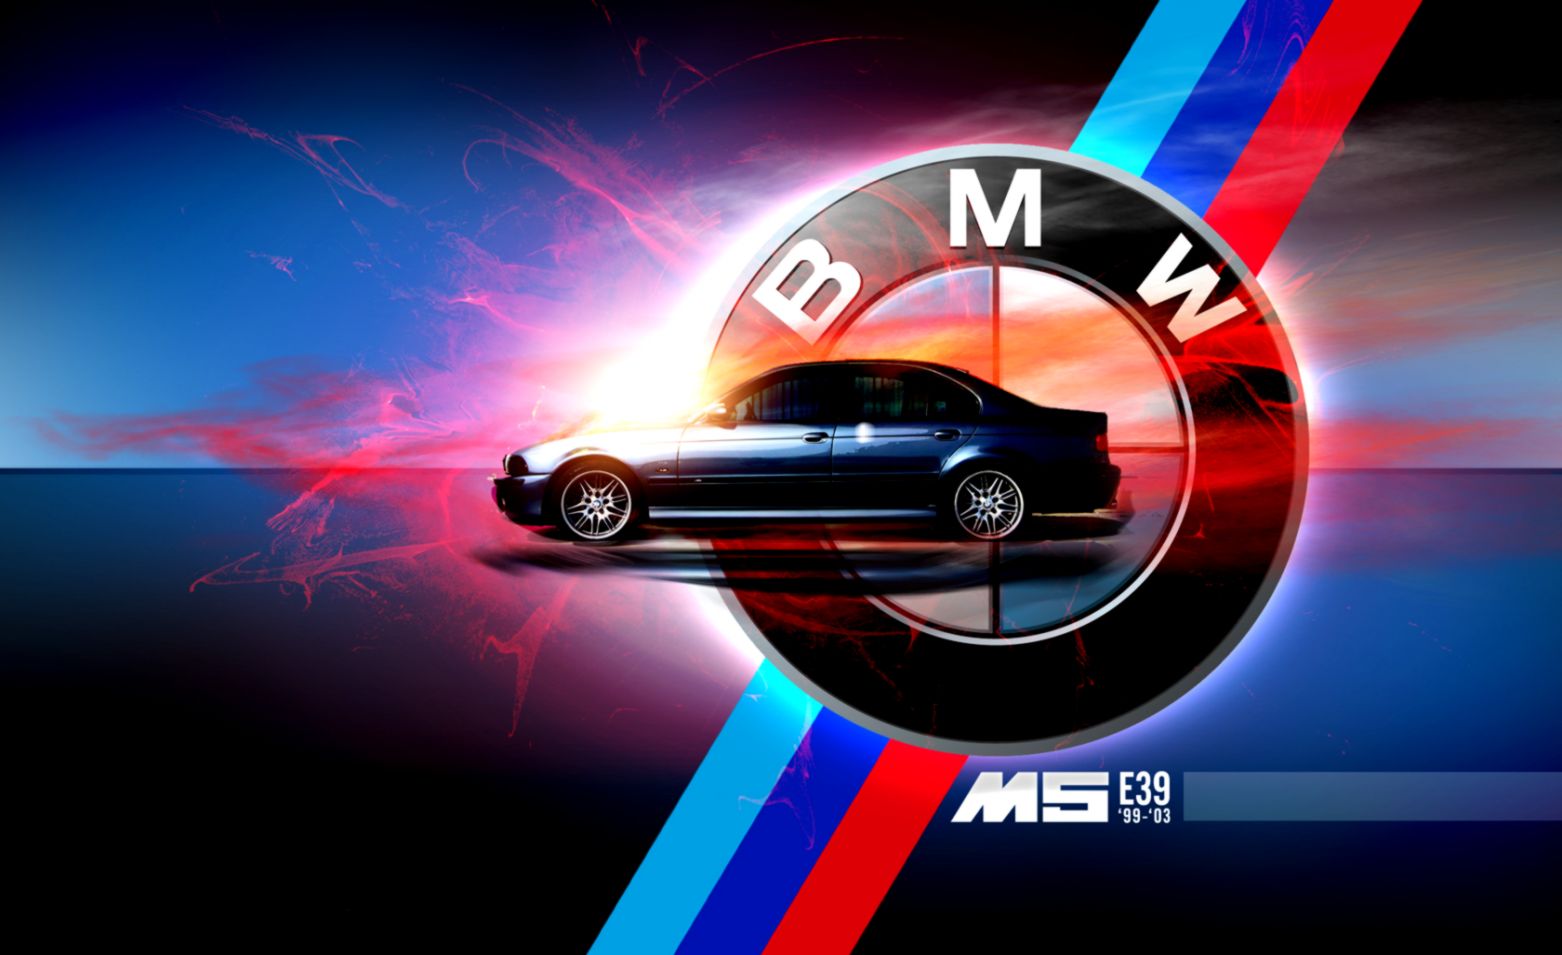 bmw logo fondos de pantalla hd,vehículo terrestre,vehículo,coche,coche mediano,coche de la ciudad